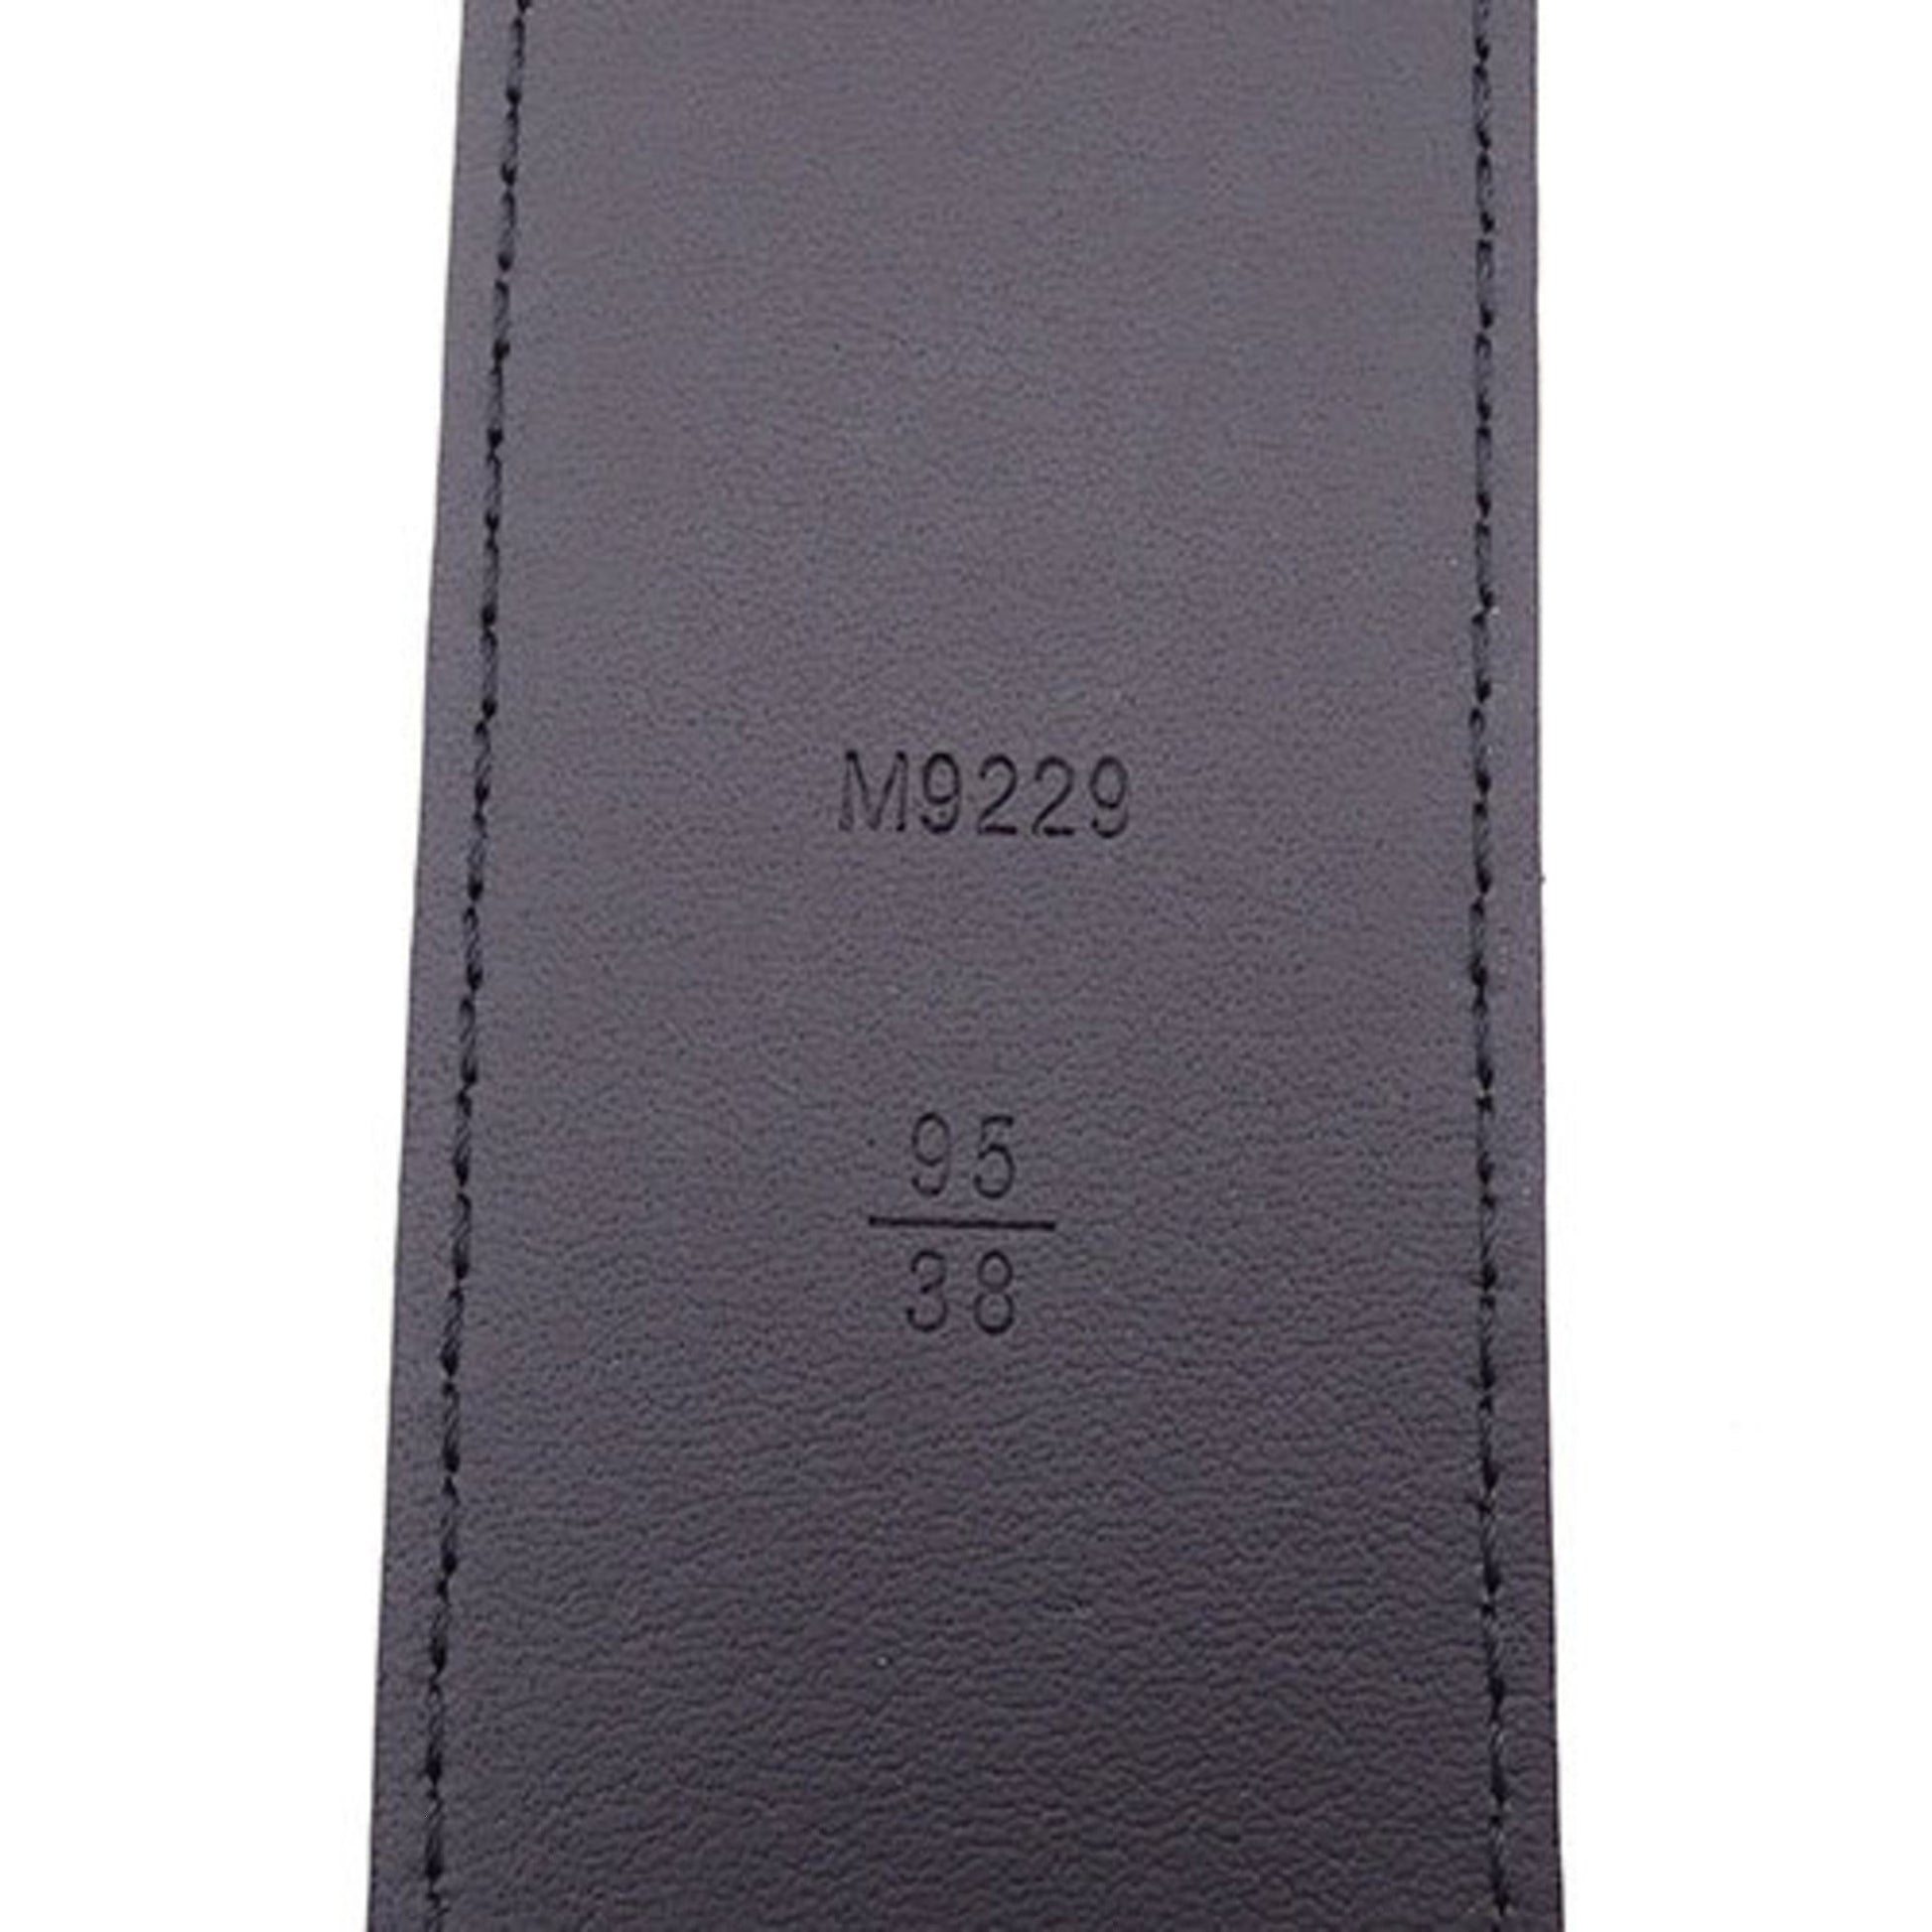 Louis Vuitton, Accessories, Louis Vuitton Belt Mens Brand Epi Leather Lv  Initial Noir Black M9229 936